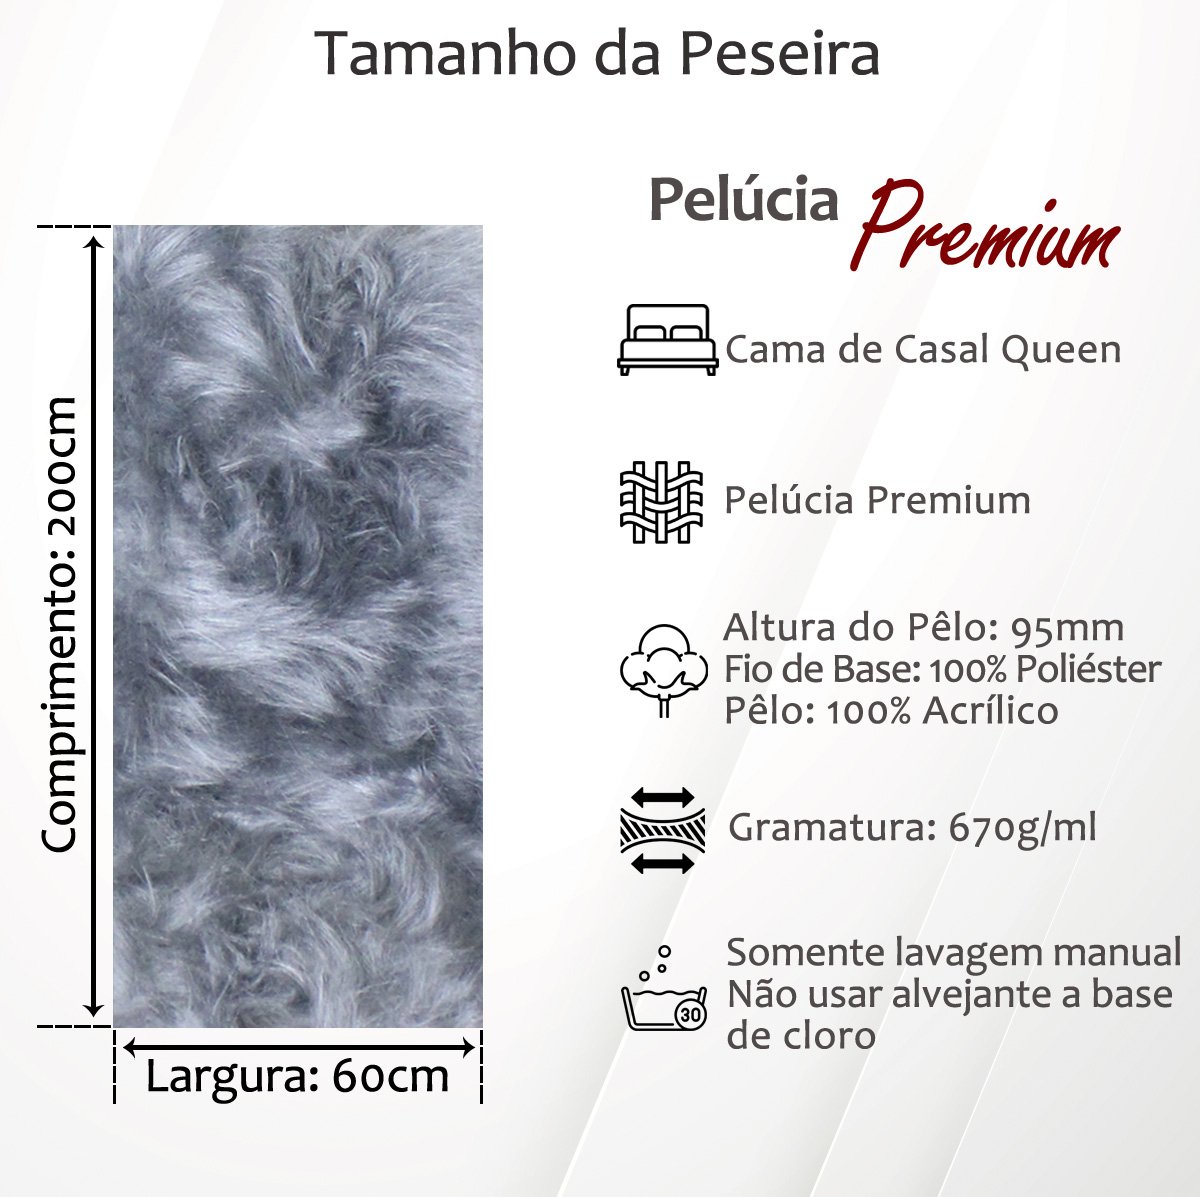 Peseira Premium Pelúcia Pelo Alto Casal Queen Size 2mx60cm + 2 Capas de Almofadas Pelúcia Premium Co - 4